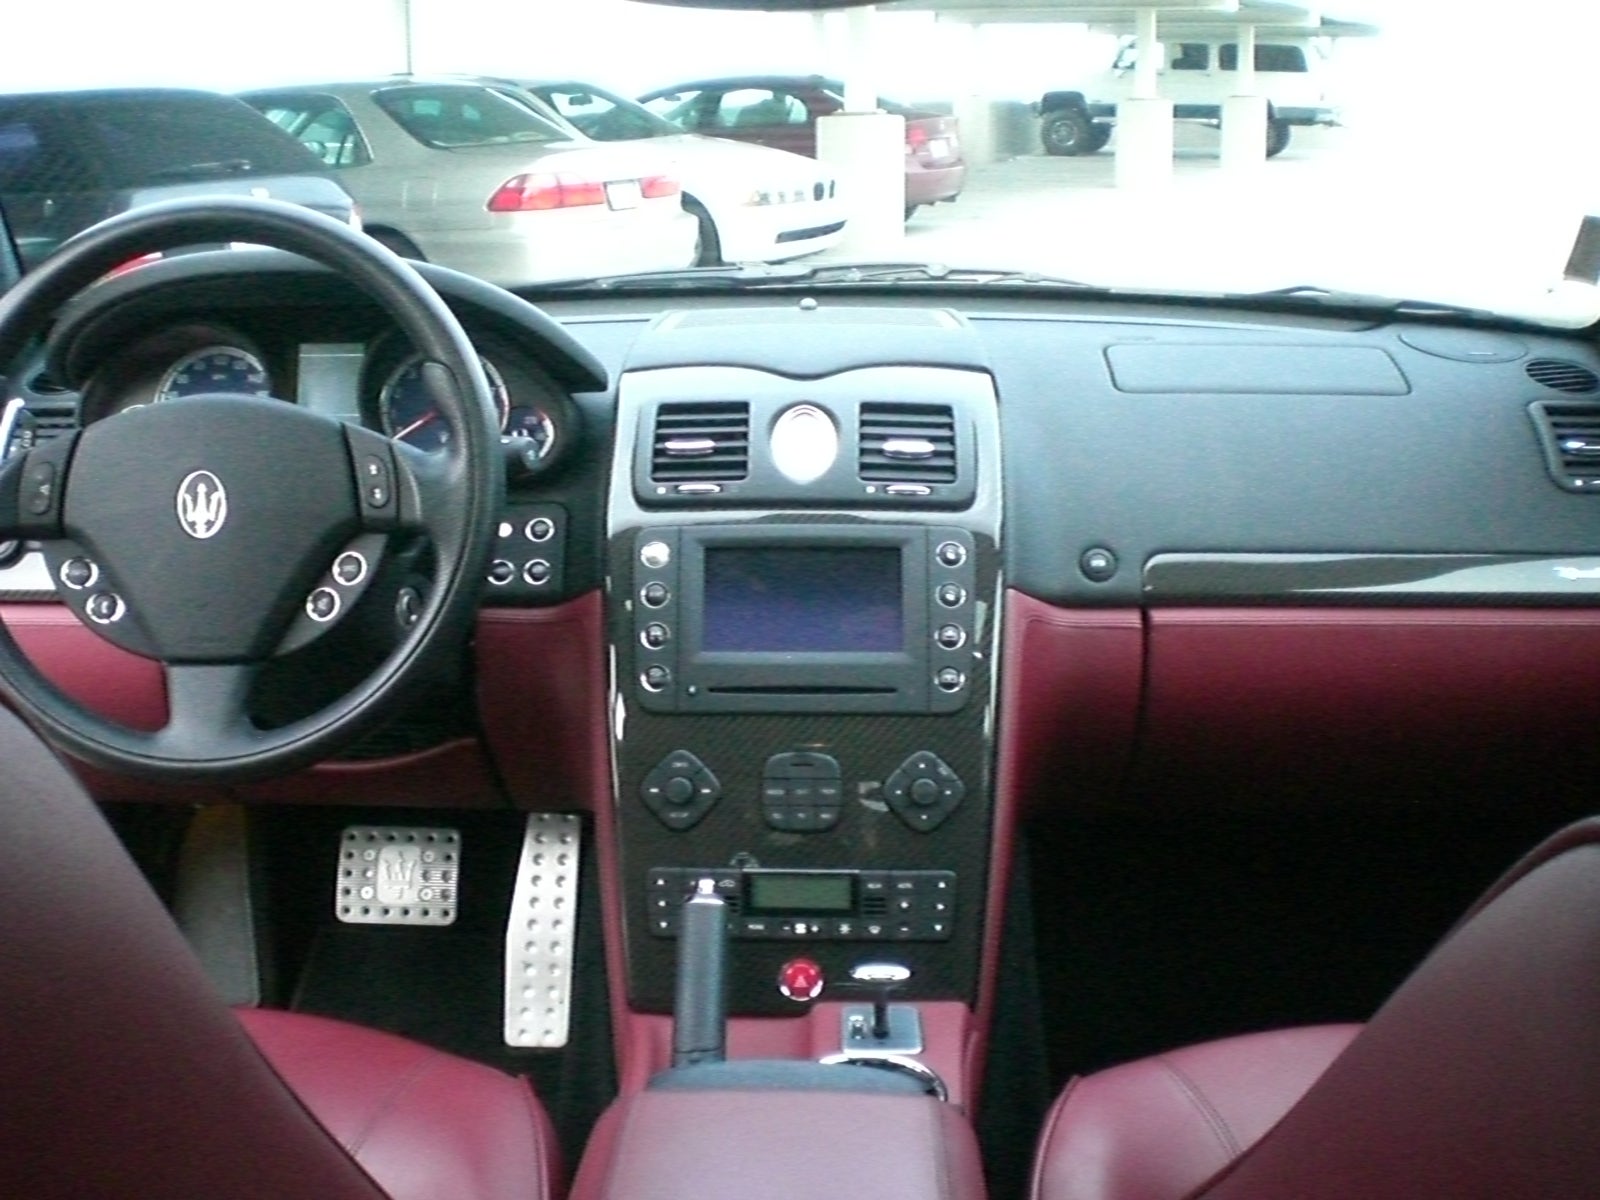 Maserati+quattroporte+gts+interior